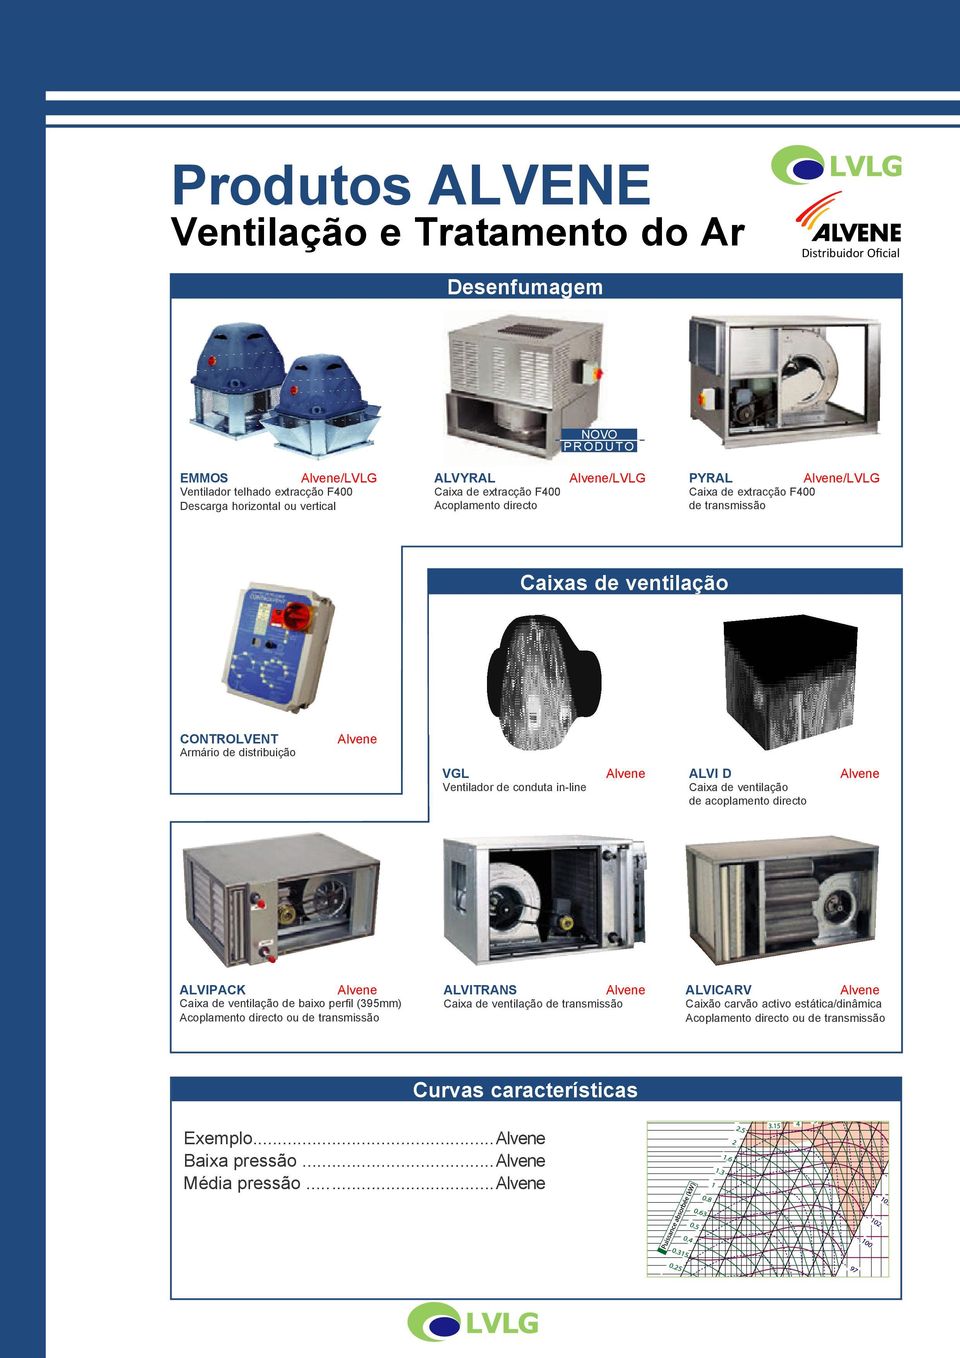 in-line ALVI D Caixa de ventilação de acoplamento directo ALVIPACK Caixa de ventilação de baixo perfil (395mm) Acoplamento directo ou de transmissão ALVITRANS Caixa de